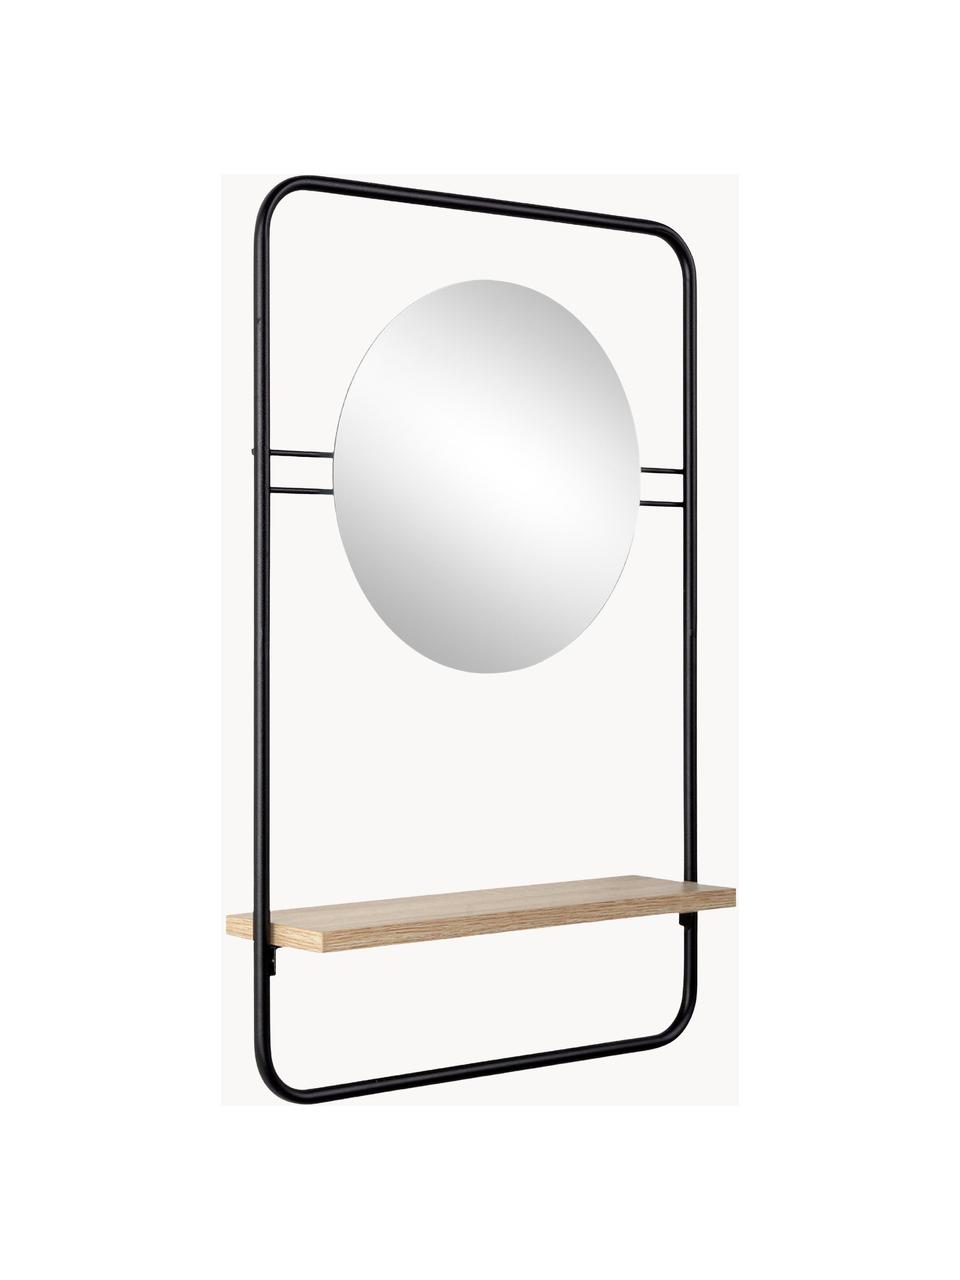 Wandspiegel Quiete mit Ablagefläche, Rahmen: Metall, beschichtet, Ablagefläche: Holz, Spiegelfläche: Spiegelglas, Schwarz, Helles Holz, B 41 x H 64 cm